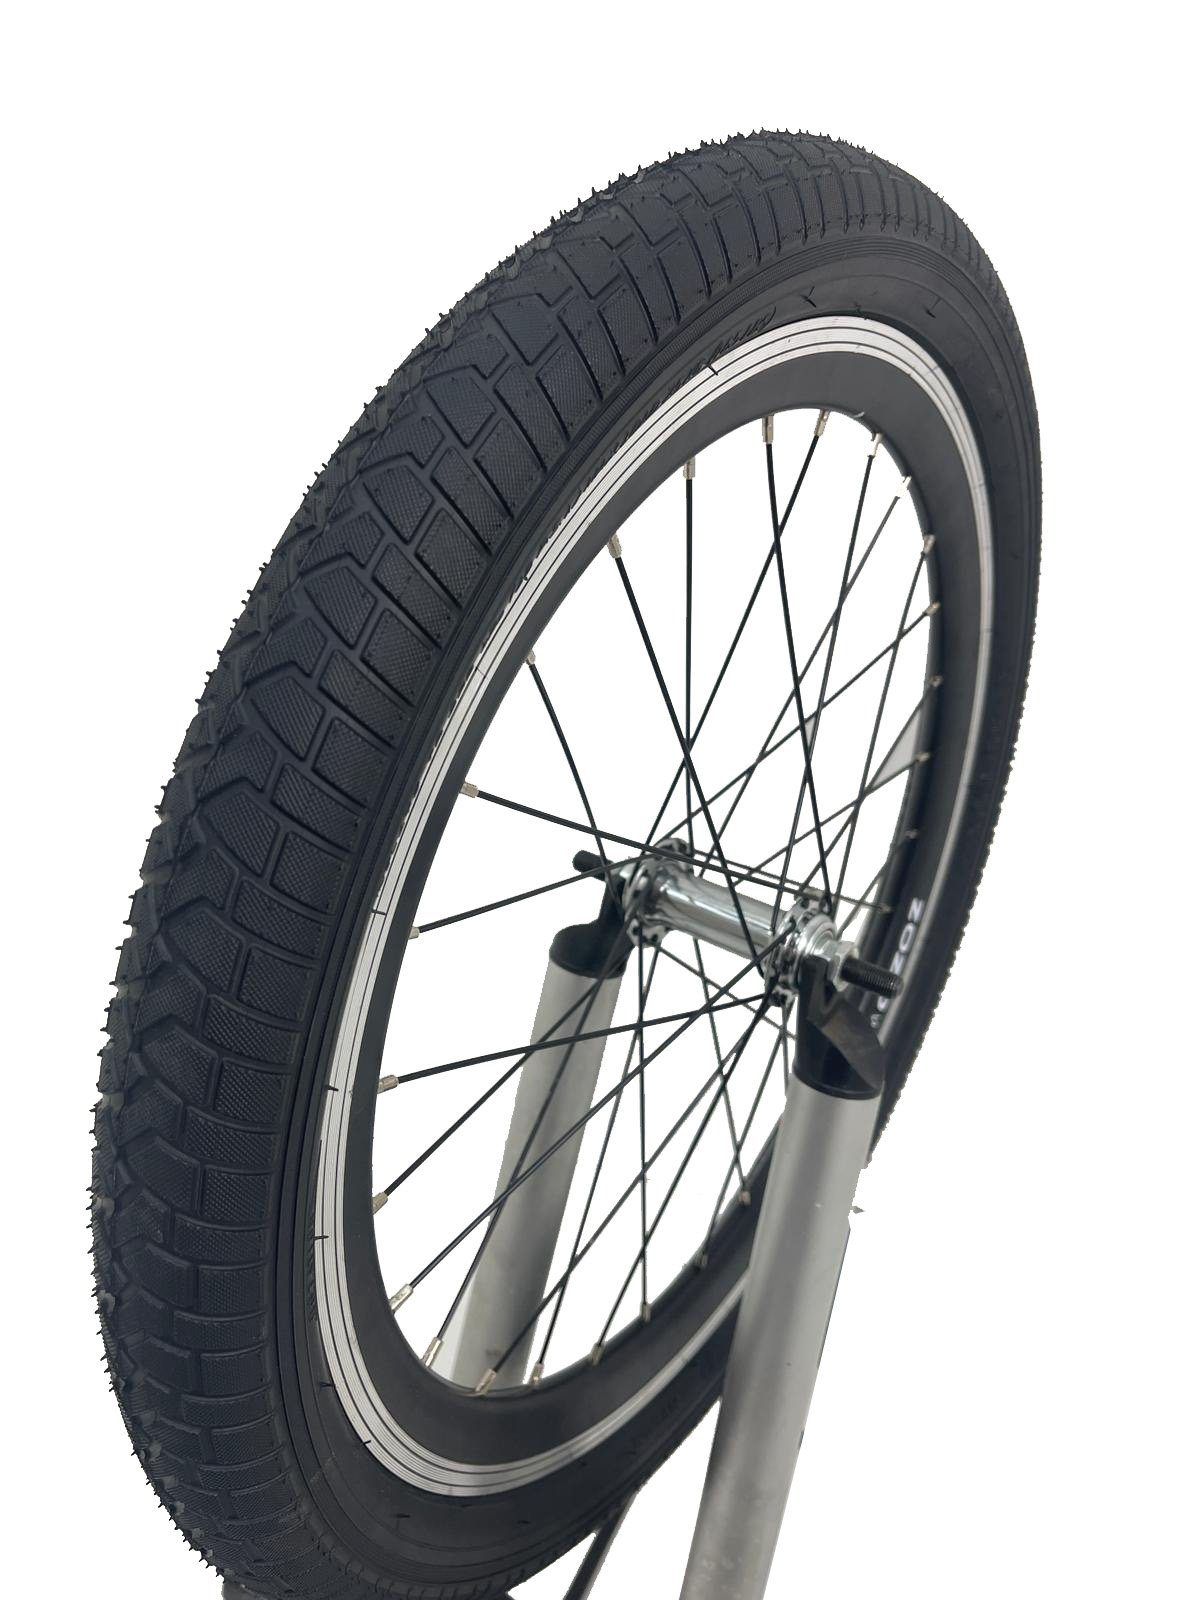 für Fahrradreifen mit geeignet BMX MTB Schläuche), Fahrradreifen 2 HZRC Inklusive (Reifen Schläuche, passende Reifen, Compass und